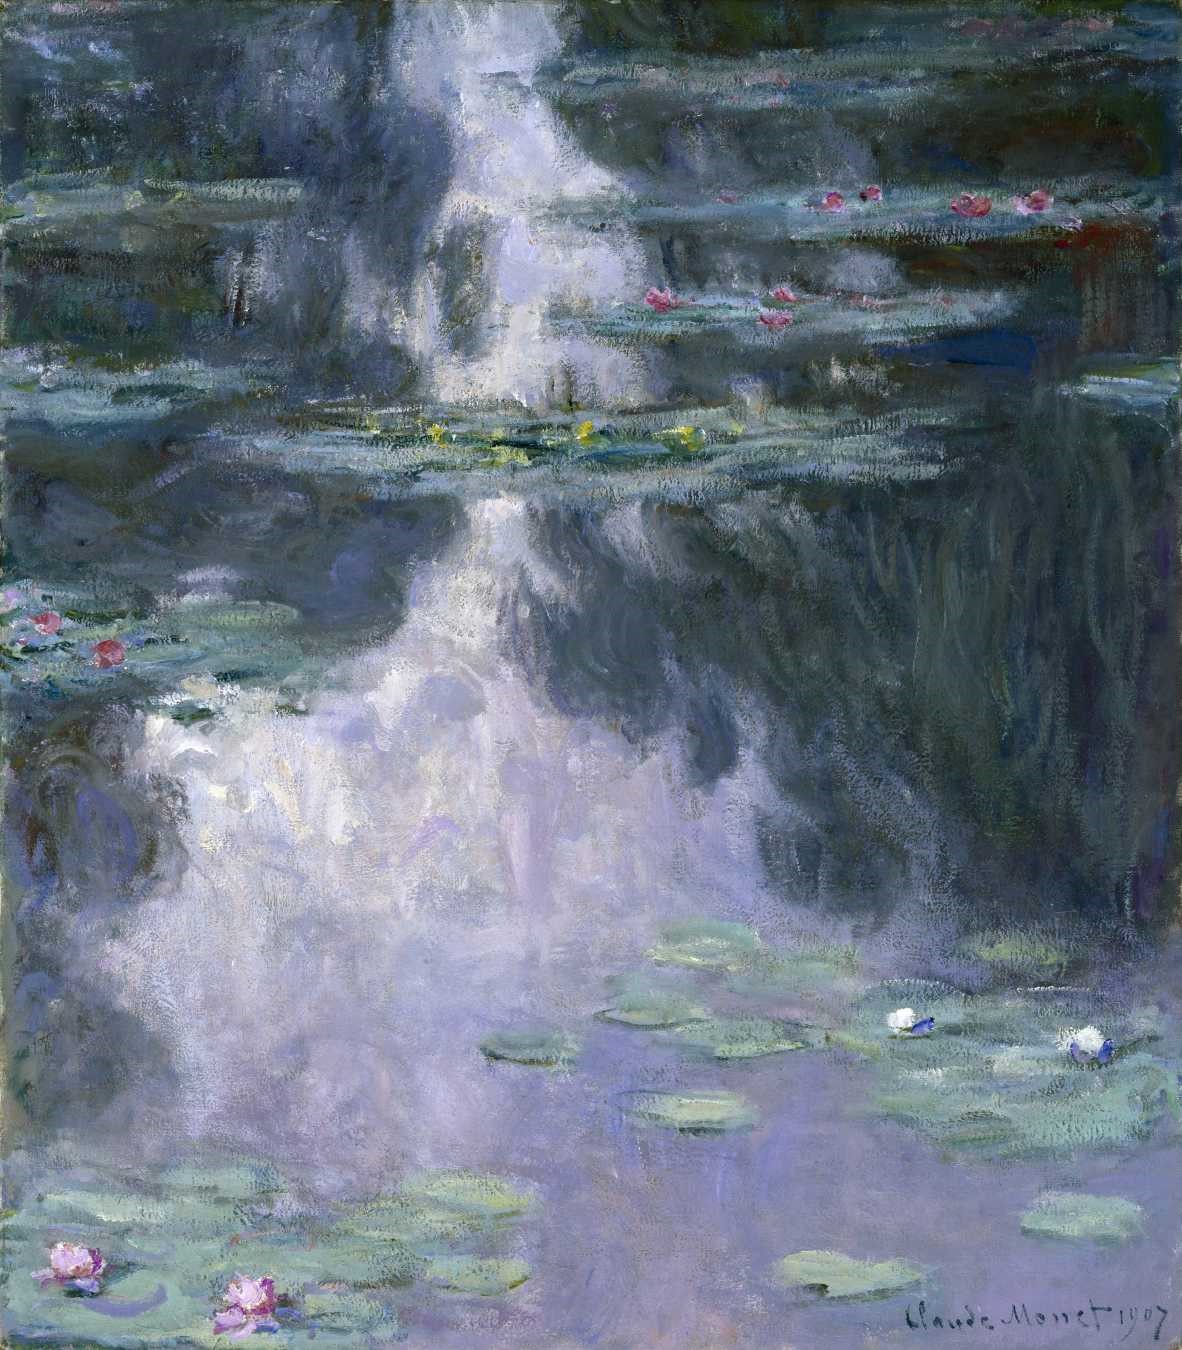 Claude Monet, Water Lilies (Nymphéas), 1907